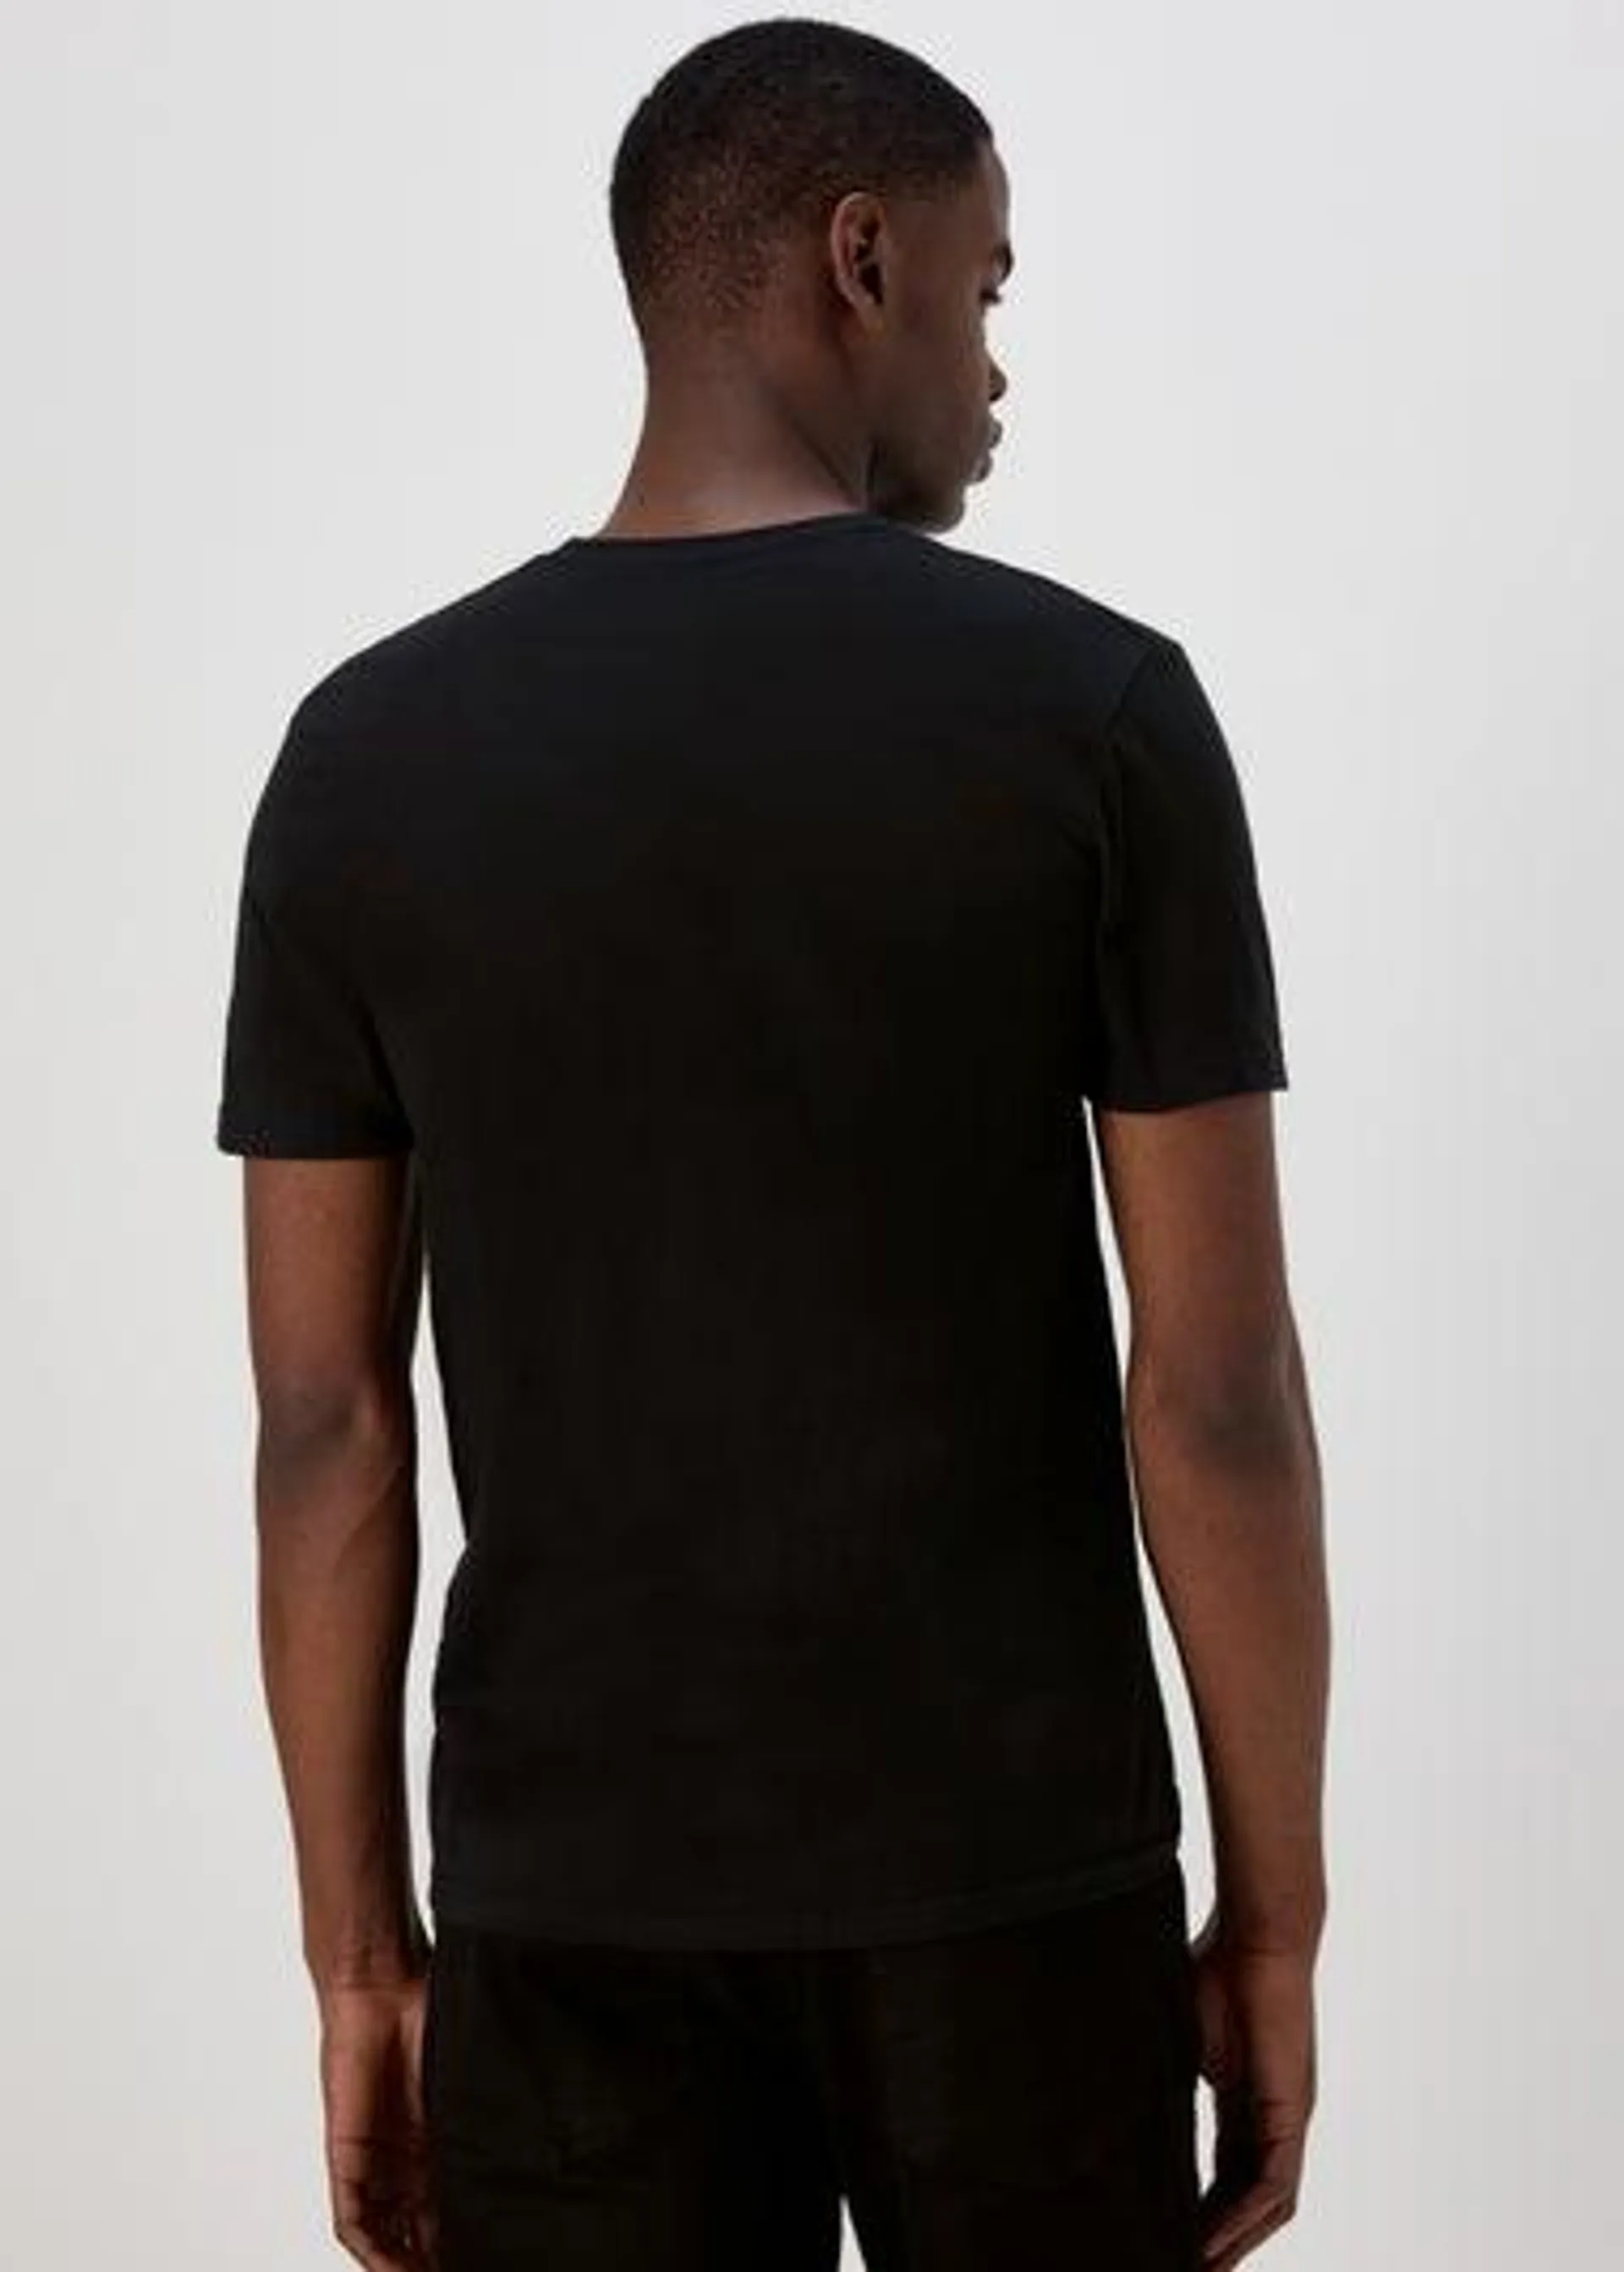 Black Good Fellas T-Shirt - Small